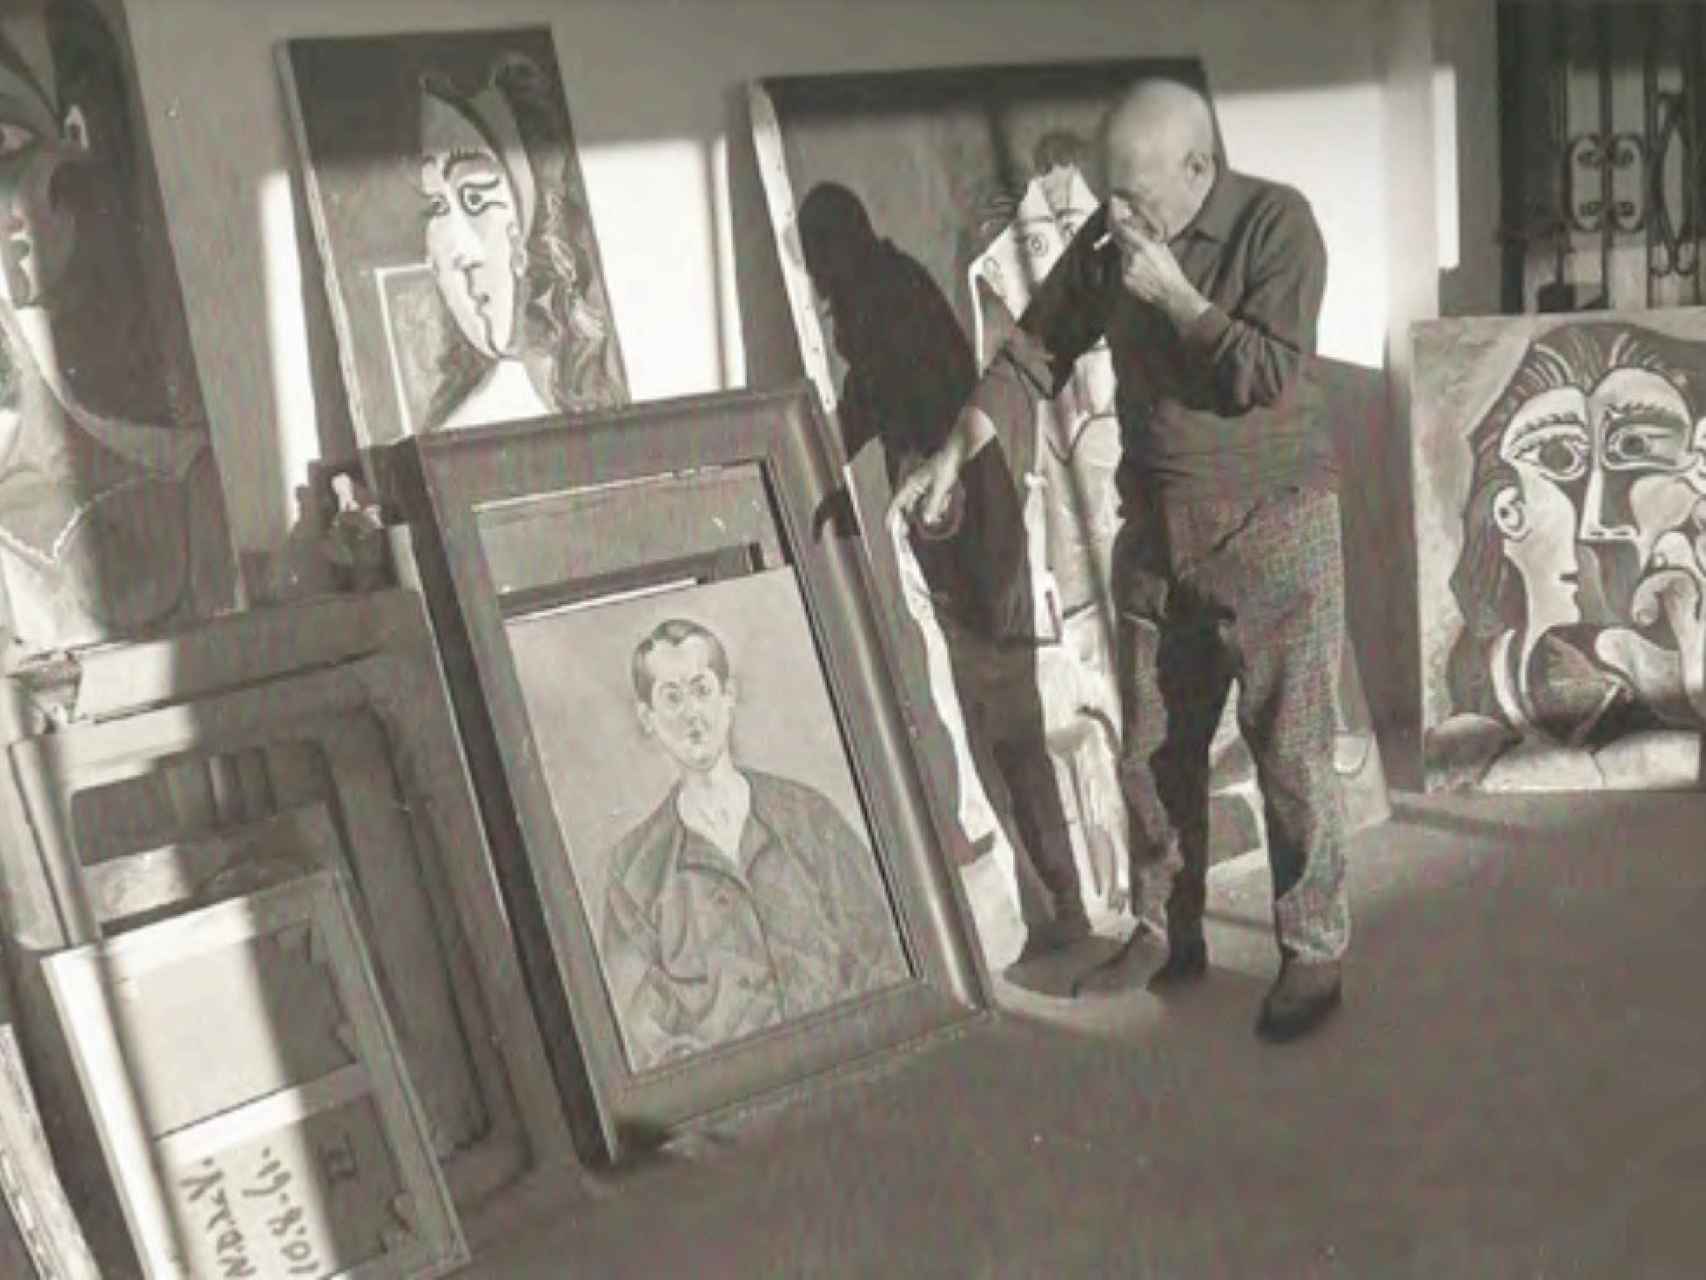 Picasso señala el autorretrato de Miró de 1919 en una fotografía en blanco y negro tomada en 1963 por Edward Quinn en Mougins